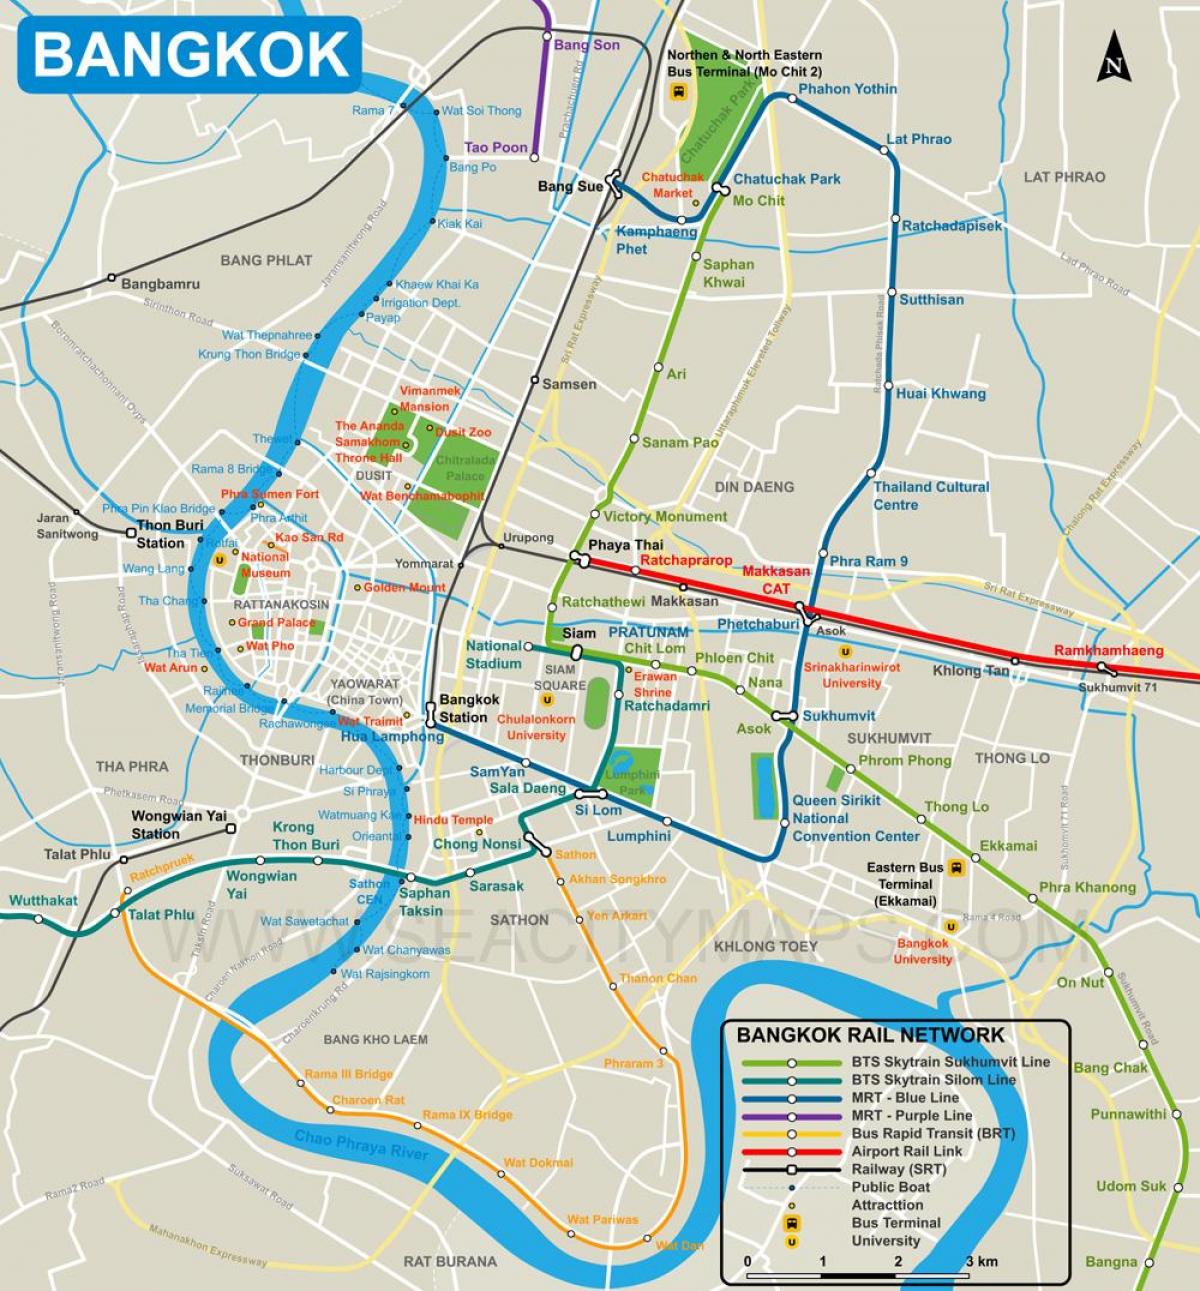 نقشہ کے بینکاک شہر کے مرکز